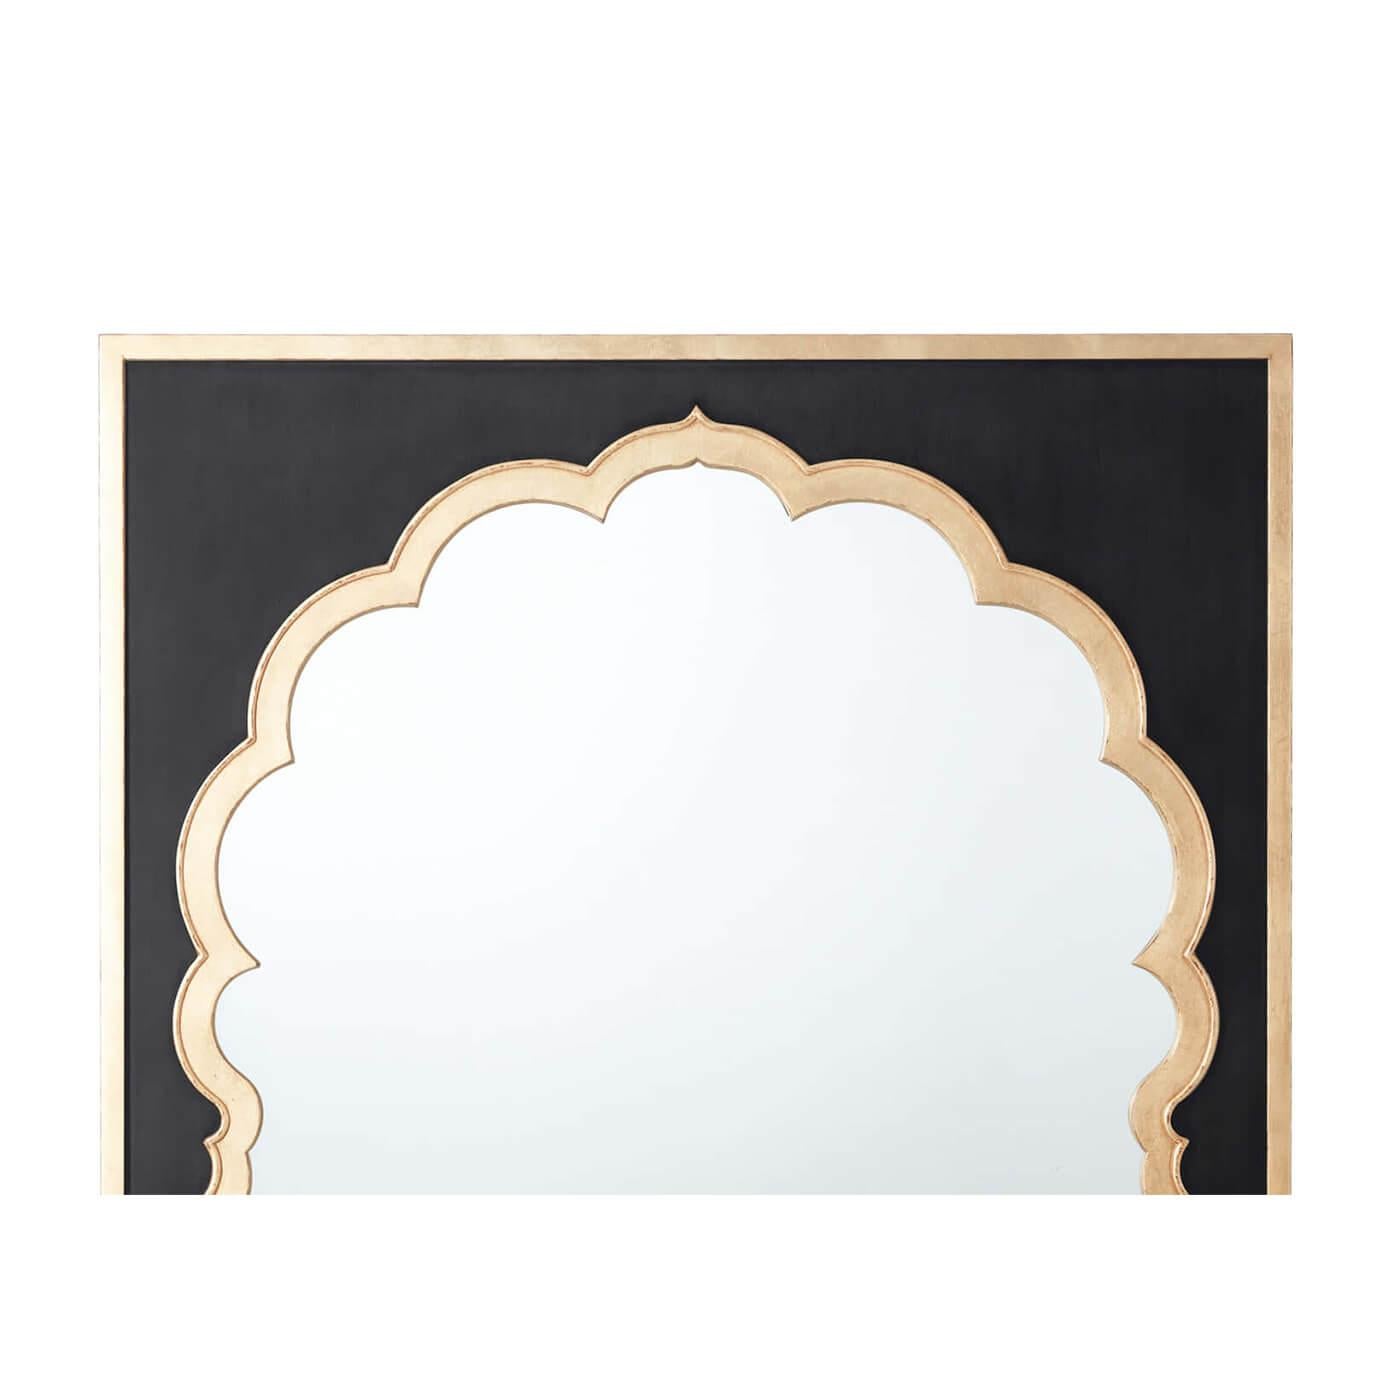 Un miroir décoratif marocain peut ajouter une architecture instantanée à une pièce. Le miroir évoque l'architecture mauresque avec un arc sculpté exotique entourant la plaque du miroir.

Dimensions : 36